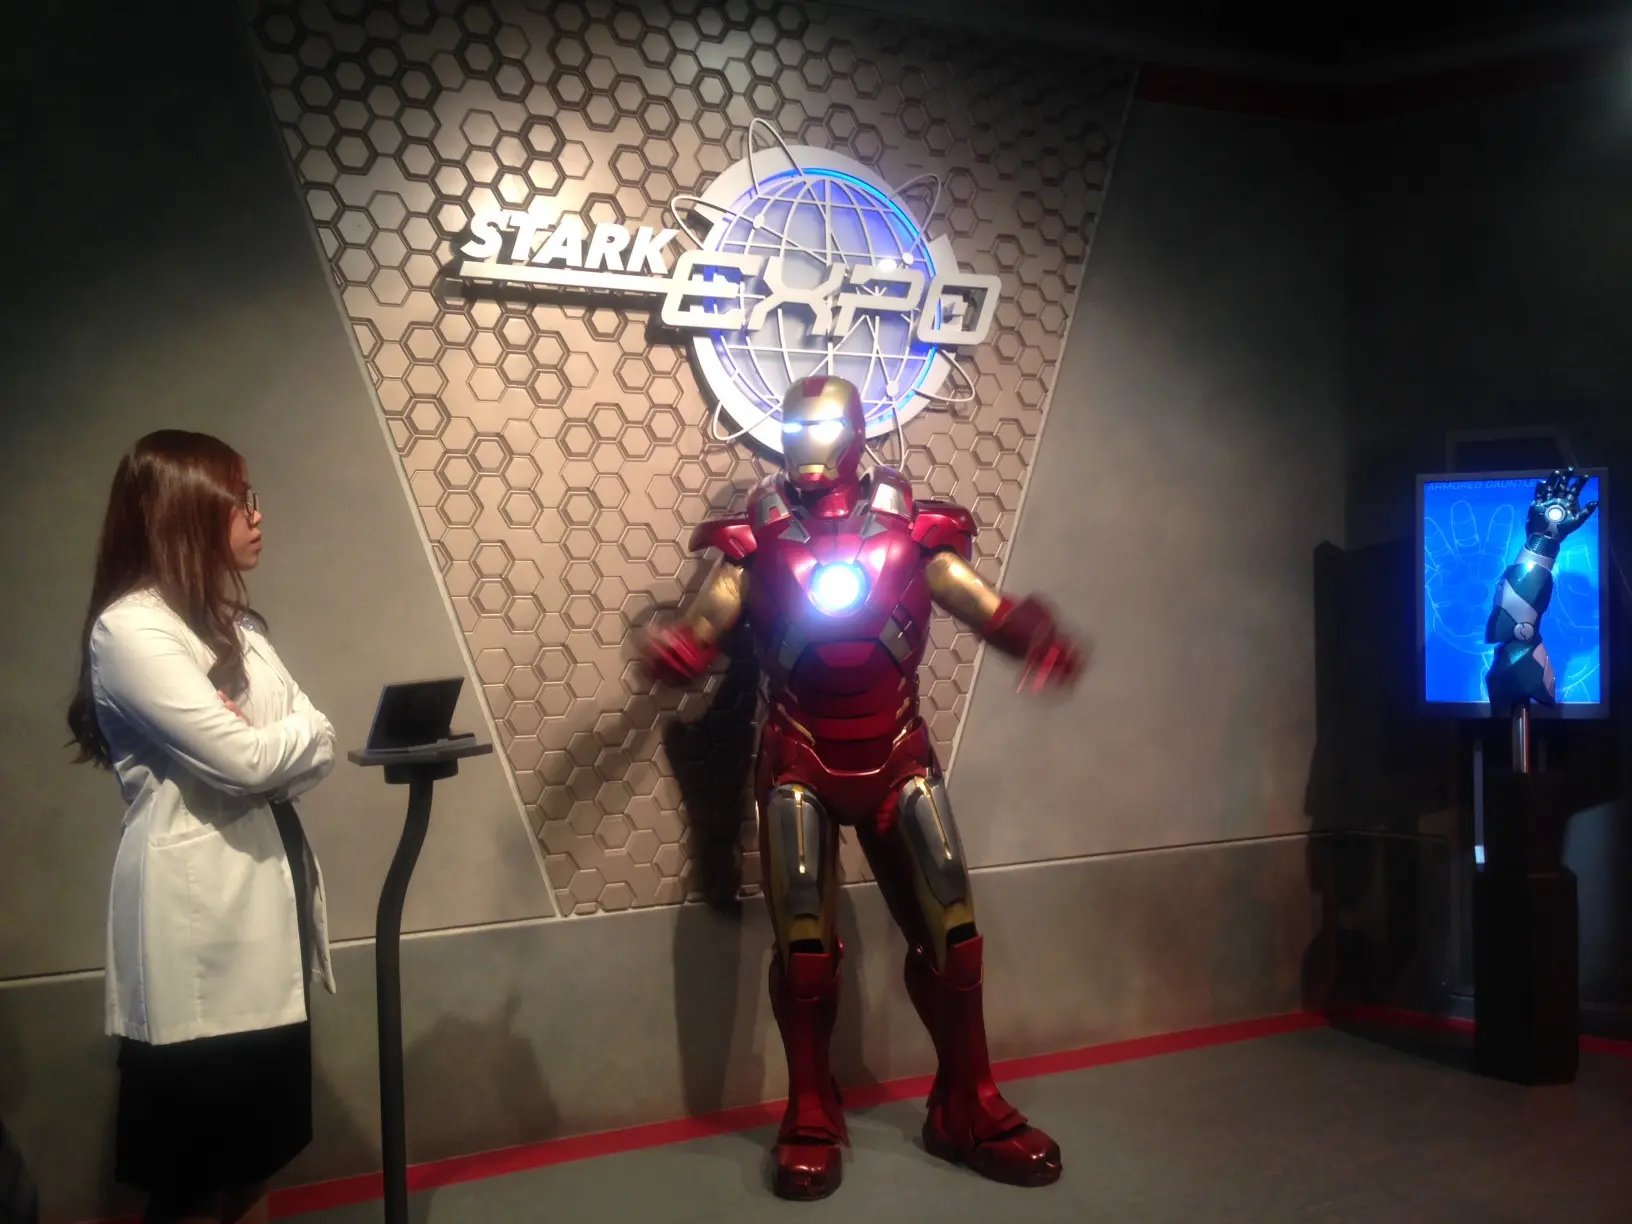 Wahana baru dengan atraksi seru bersama Iron Man kian meramaikan Disneyland Hong Kong.  (Foto: Novi Nadya/Liputan6.com)